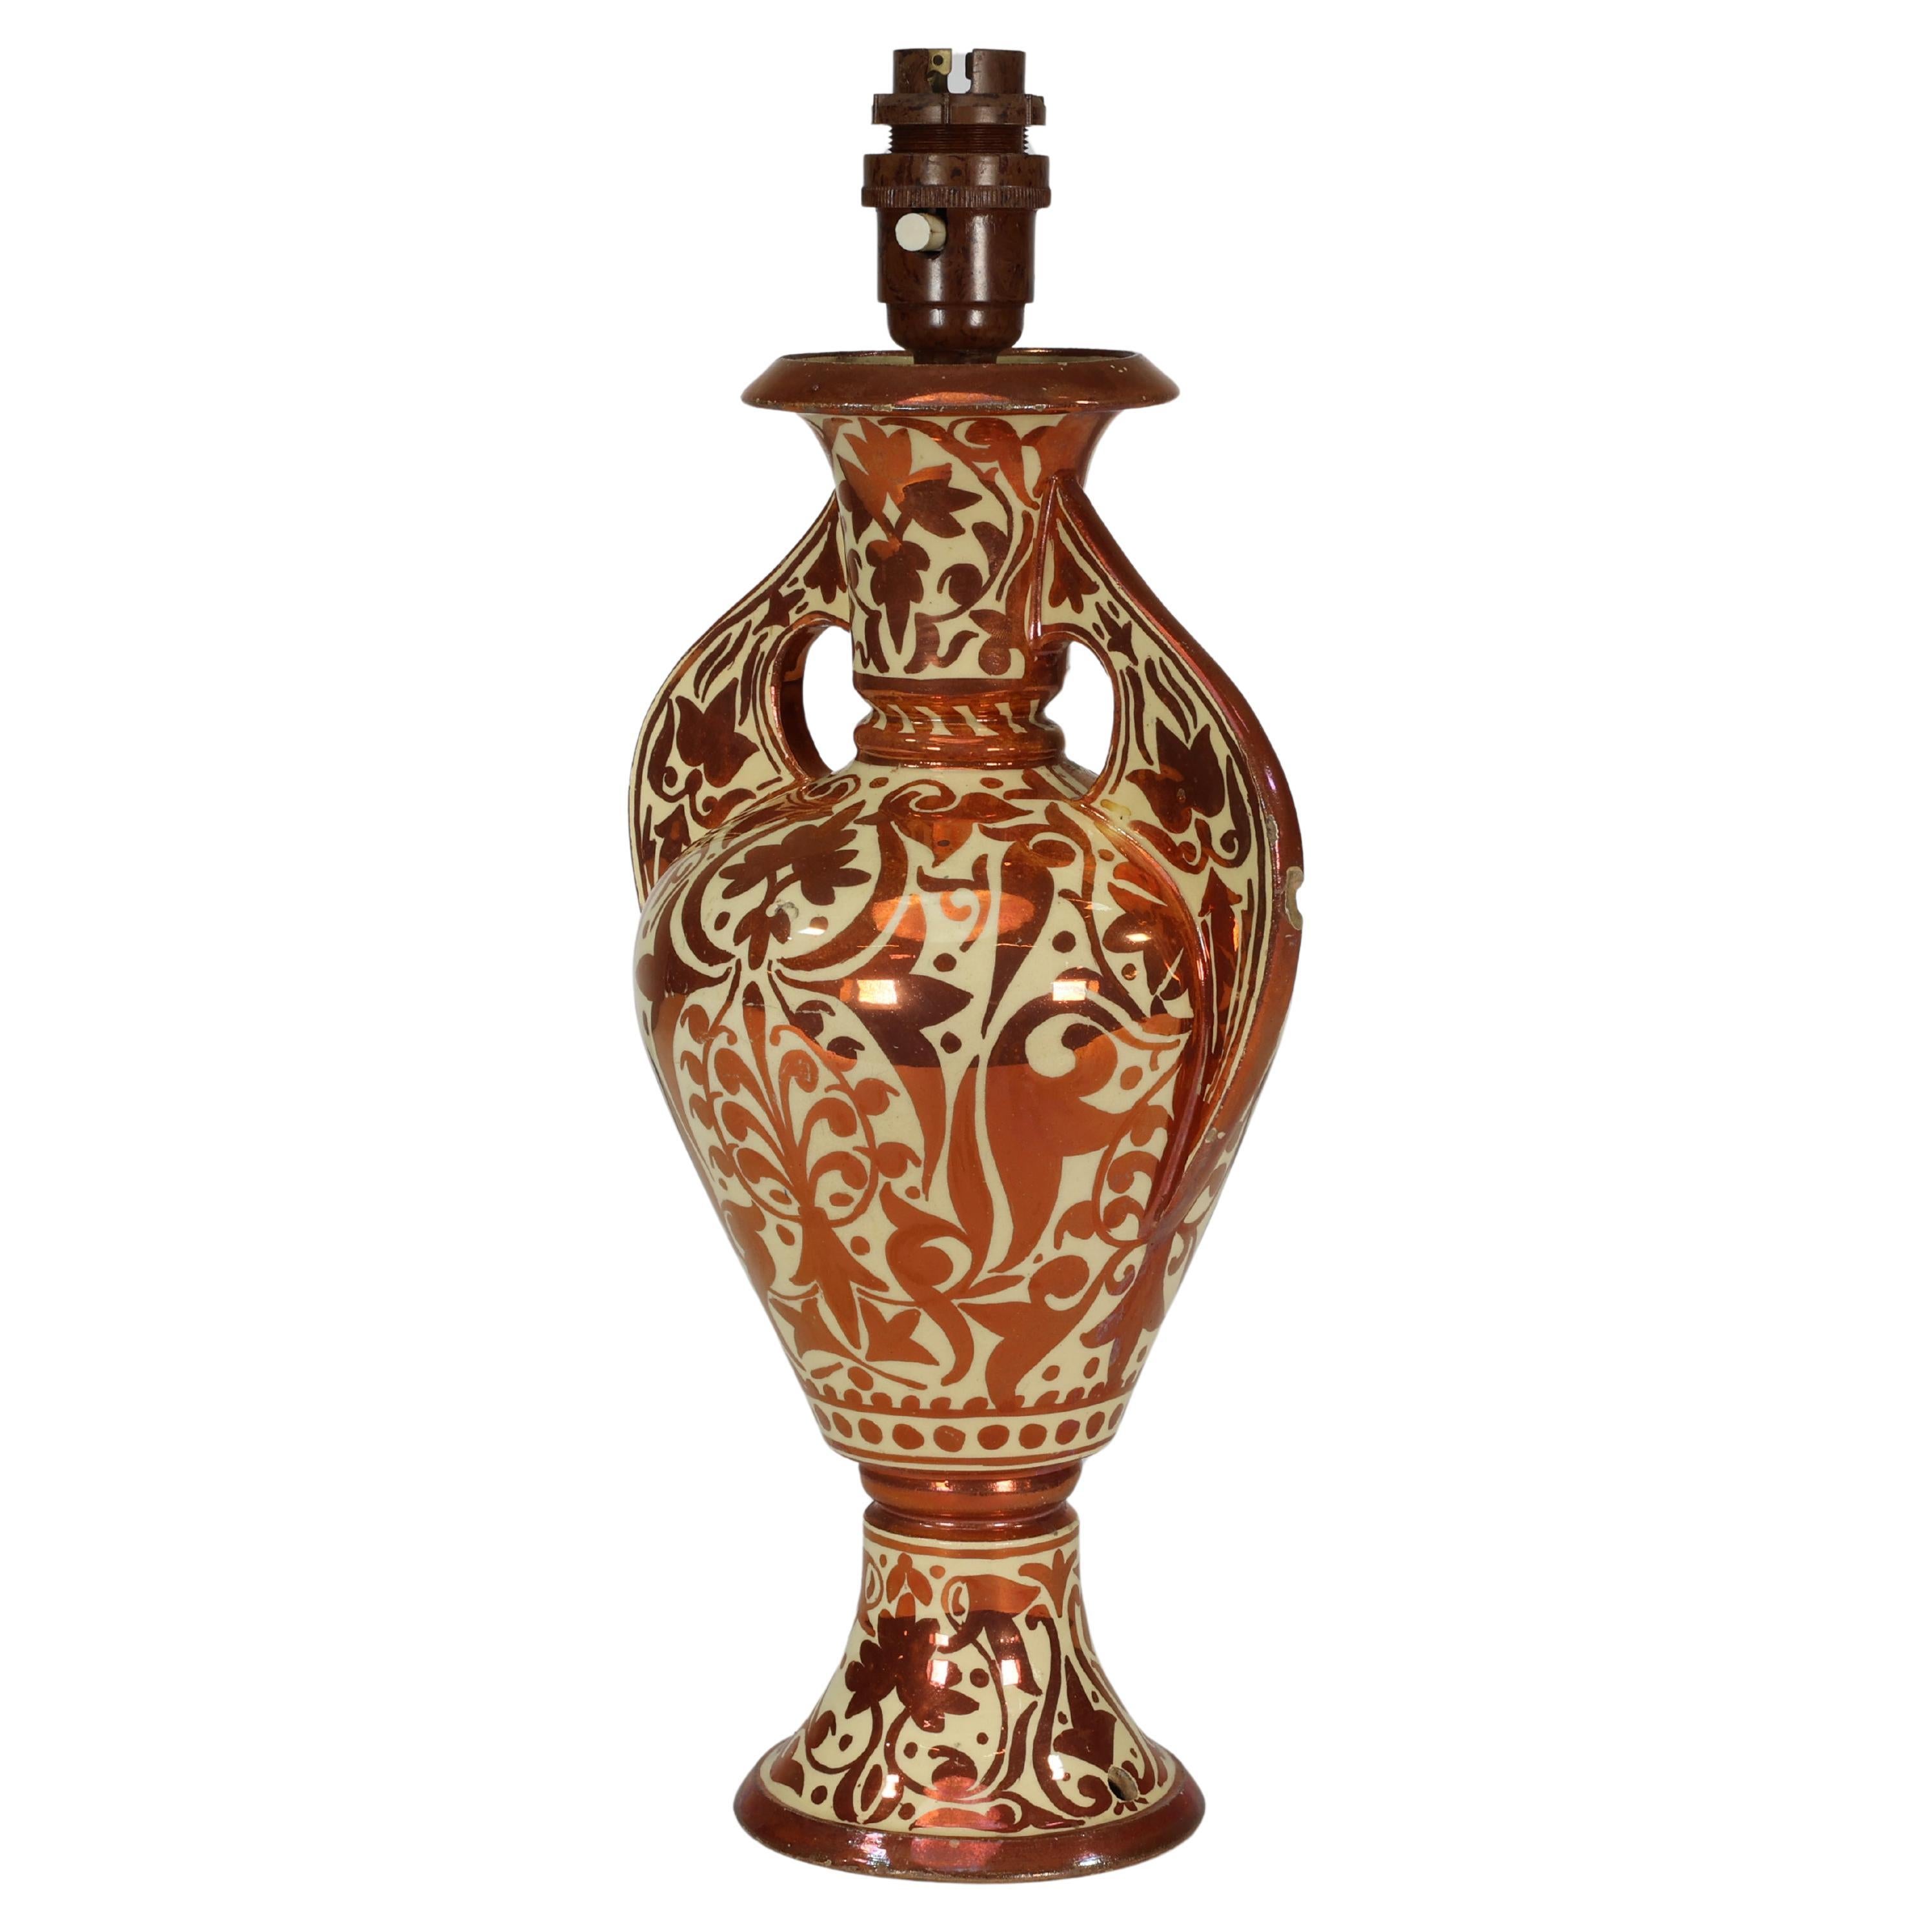 Italienische Cantagalli-Vase aus Porzellan mit kupferfarbenem Glanz, umgewandelt in Tischlampe.